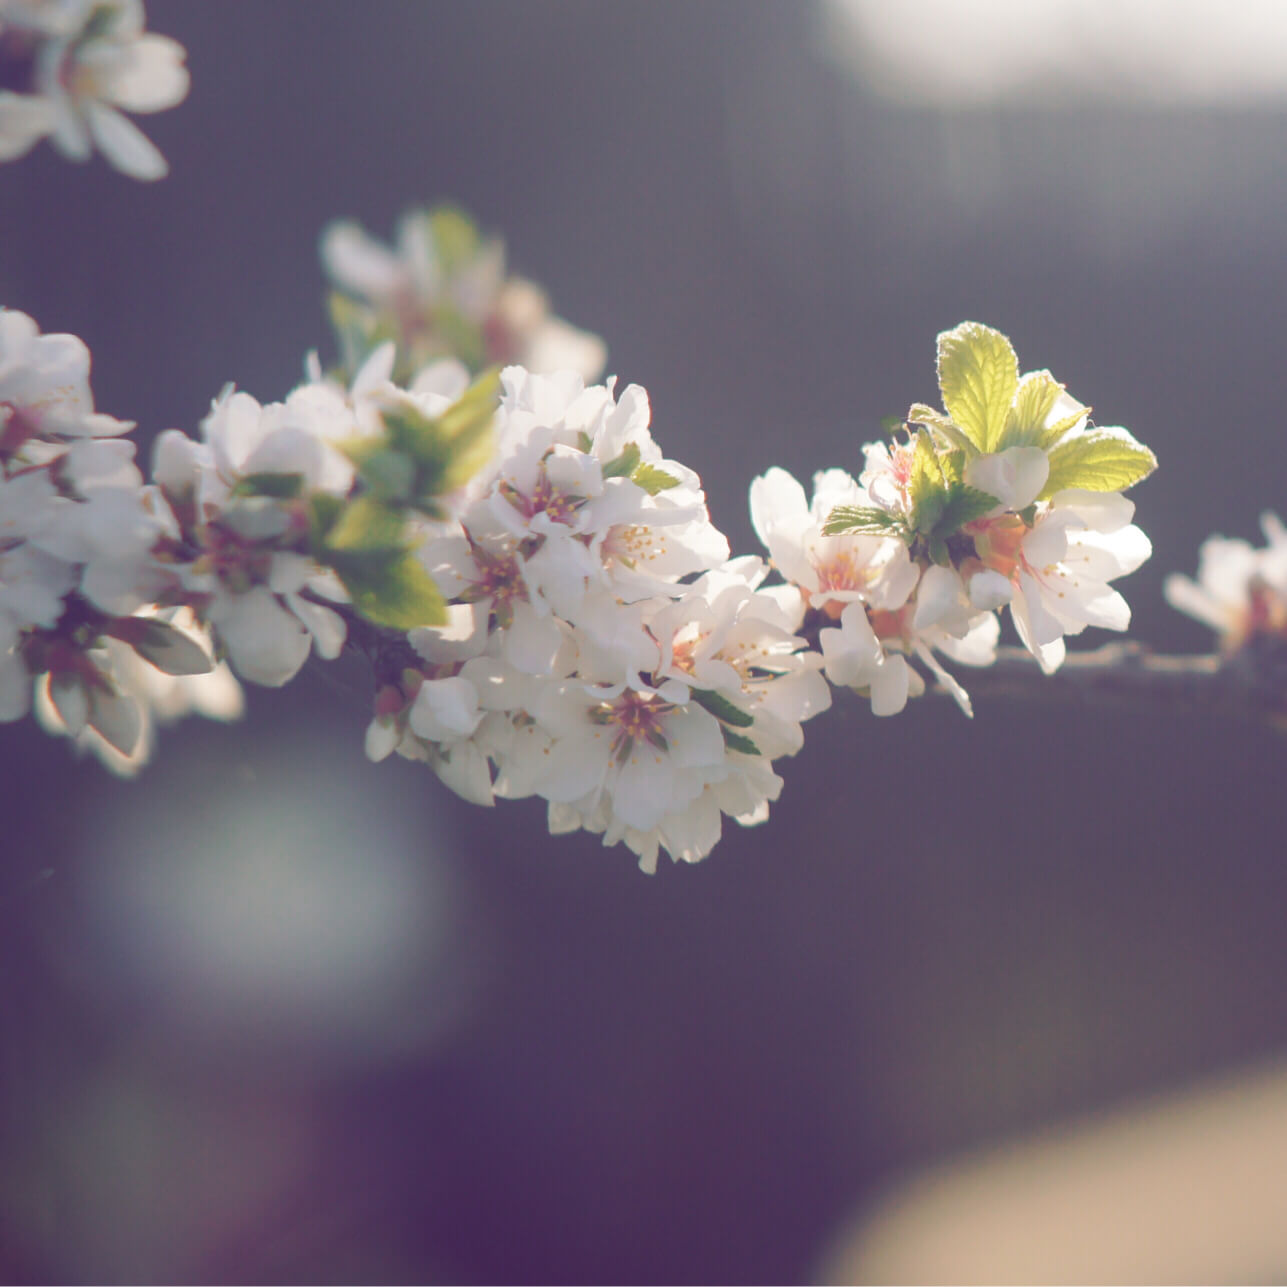 ユスラウメ 梅桃 の花言葉 花の特徴や実の味 食べ方は Greensnap グリーンスナップ